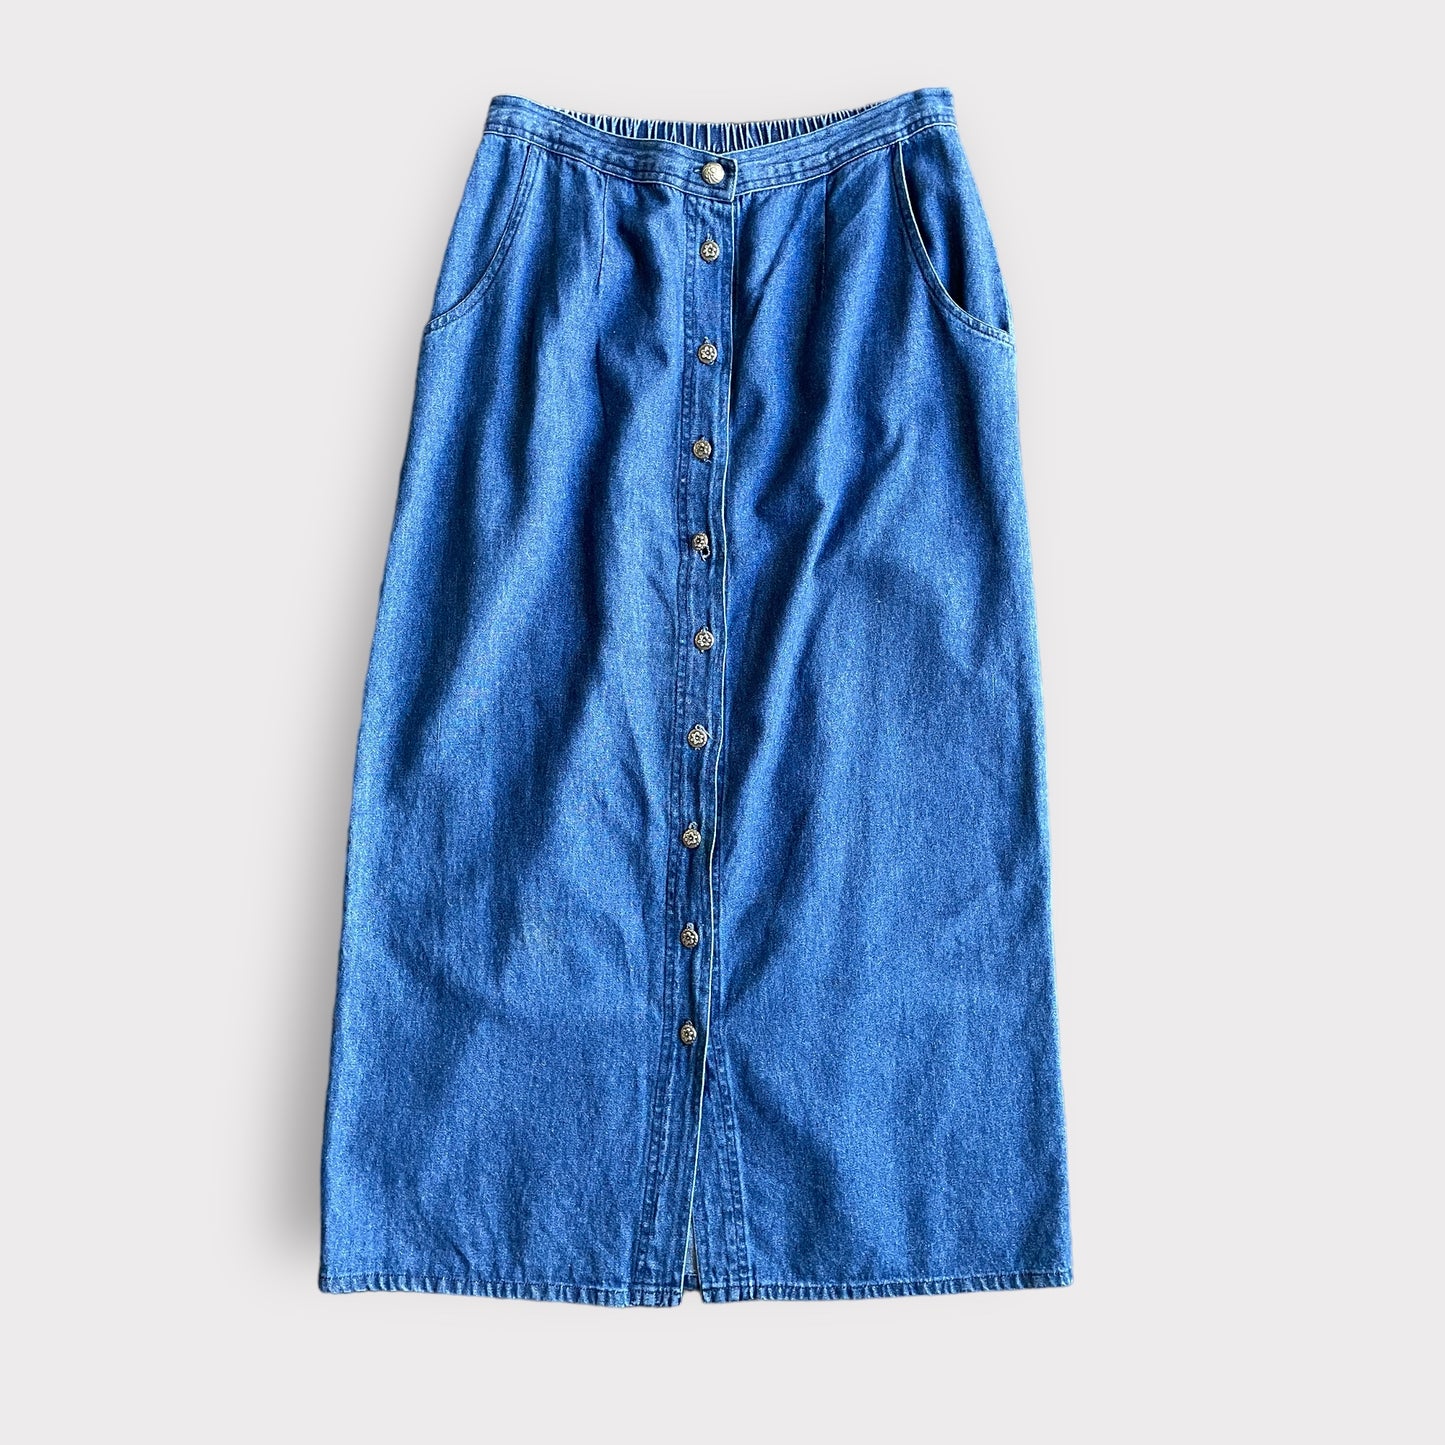 Denim skirt 3/4 length - size 14